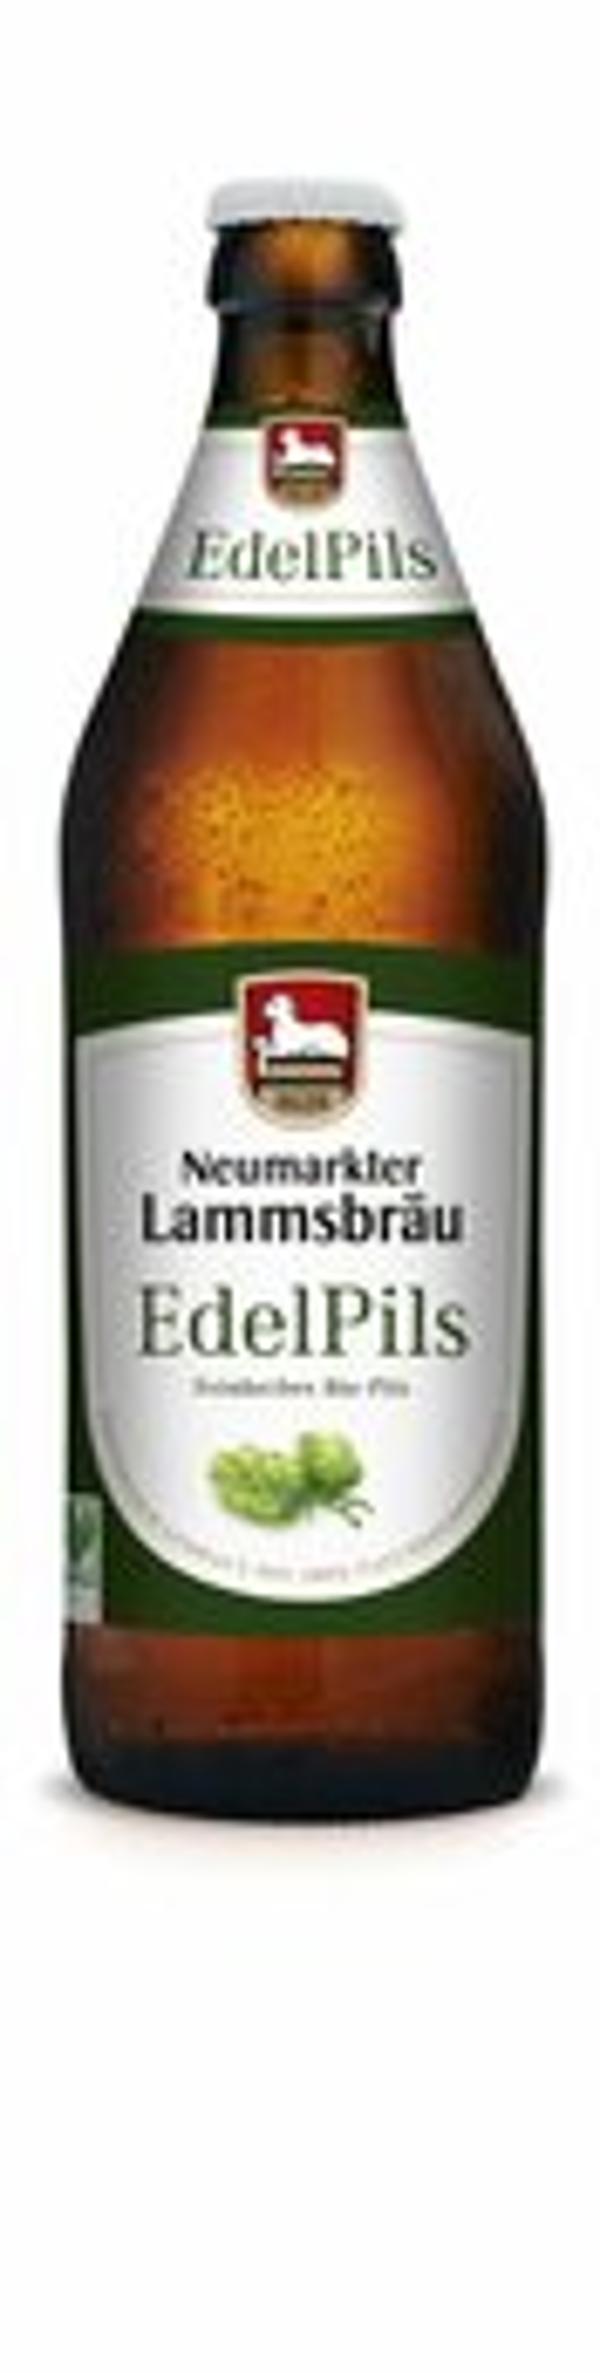 Produktfoto zu Lammsbräu Edelpils [0,5l]